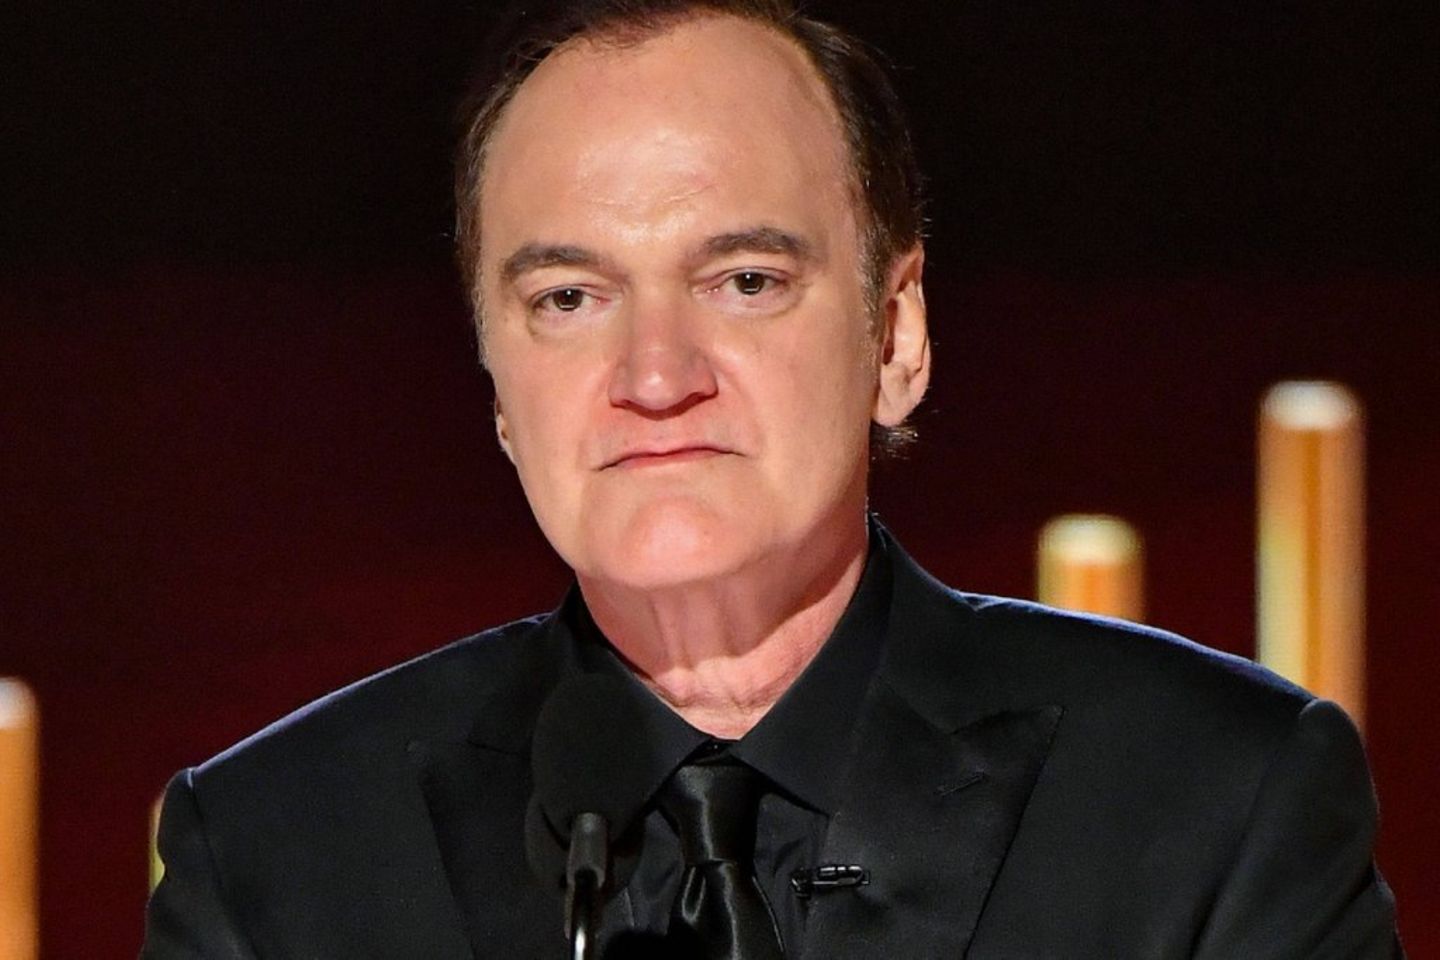 Quentin Tarantino hat enthüllt, von welchem Filmkritiker sein kommendes Werk "The Movie Critic" handelt.